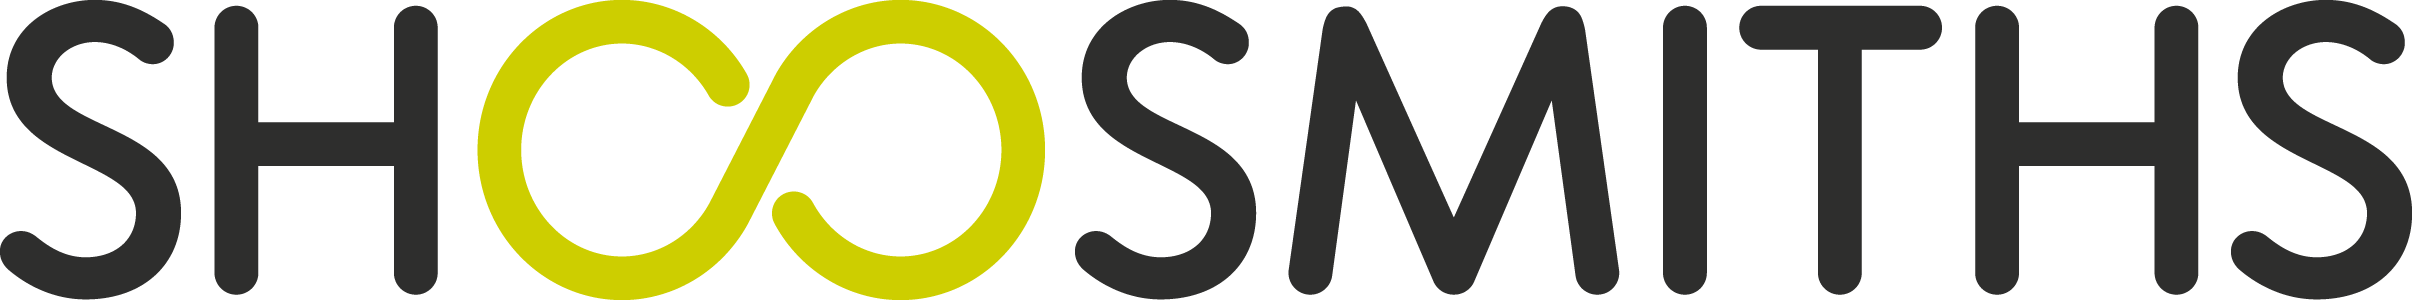 Shoosmiths-logo-390c-for-light